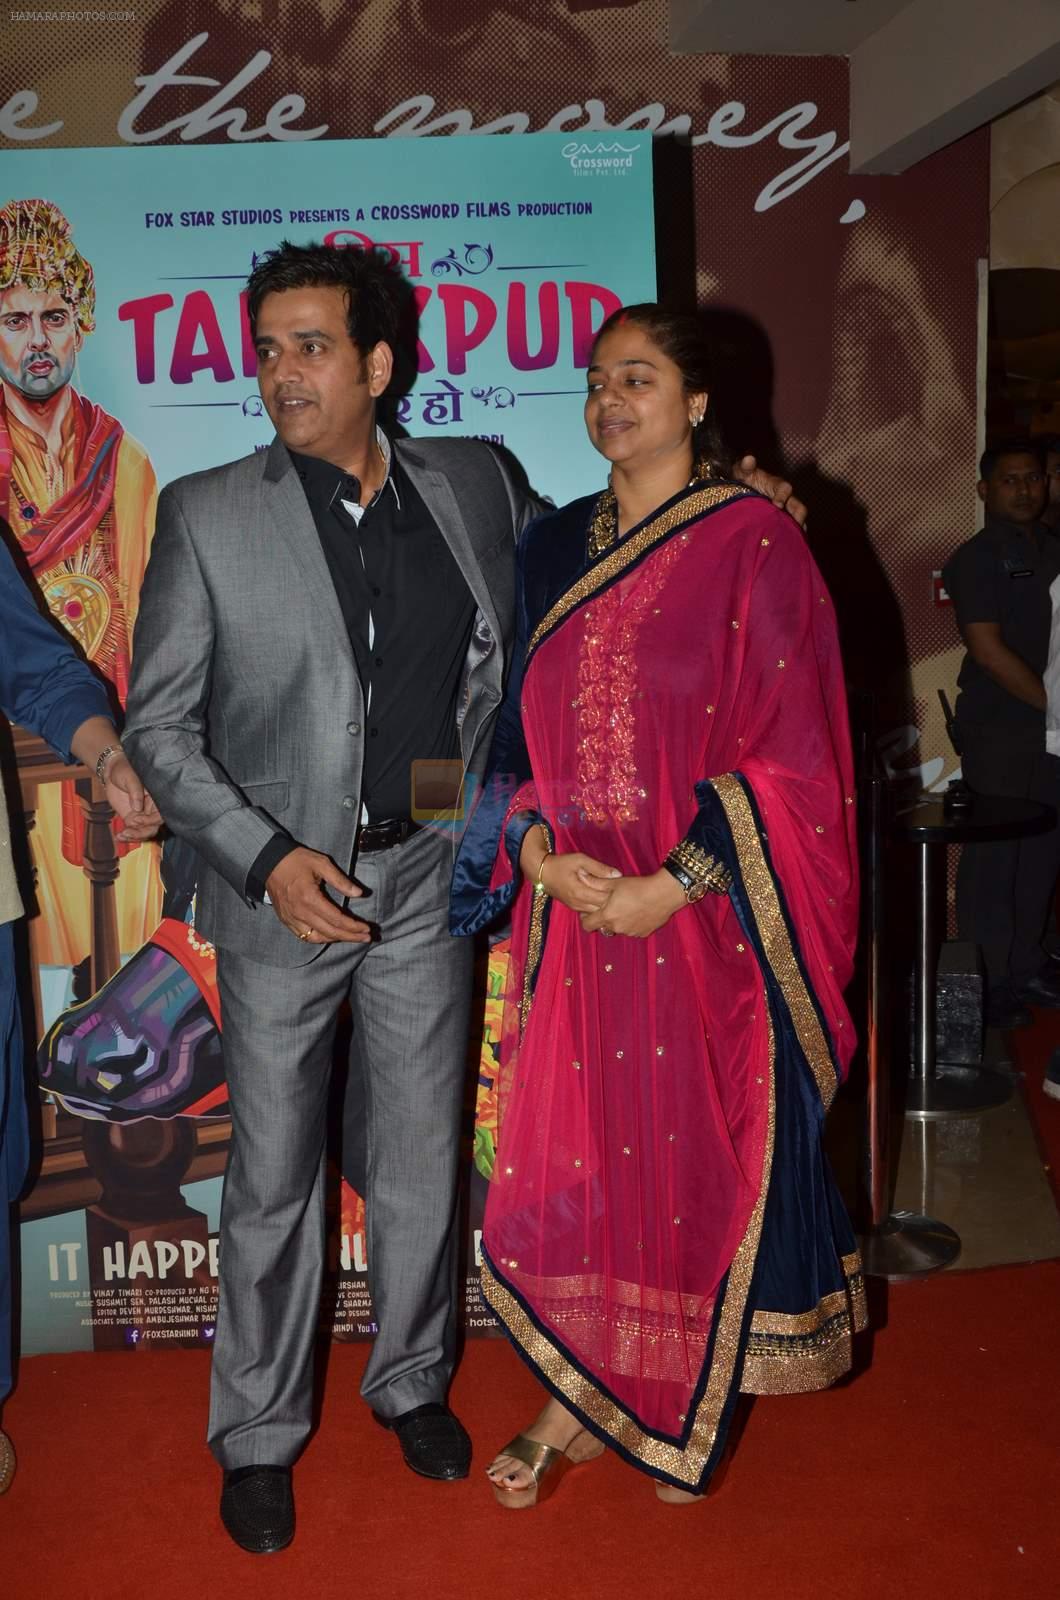 Ravi Kishan at Miss Tanakpur premiere in Mumbai on 25th June 2015